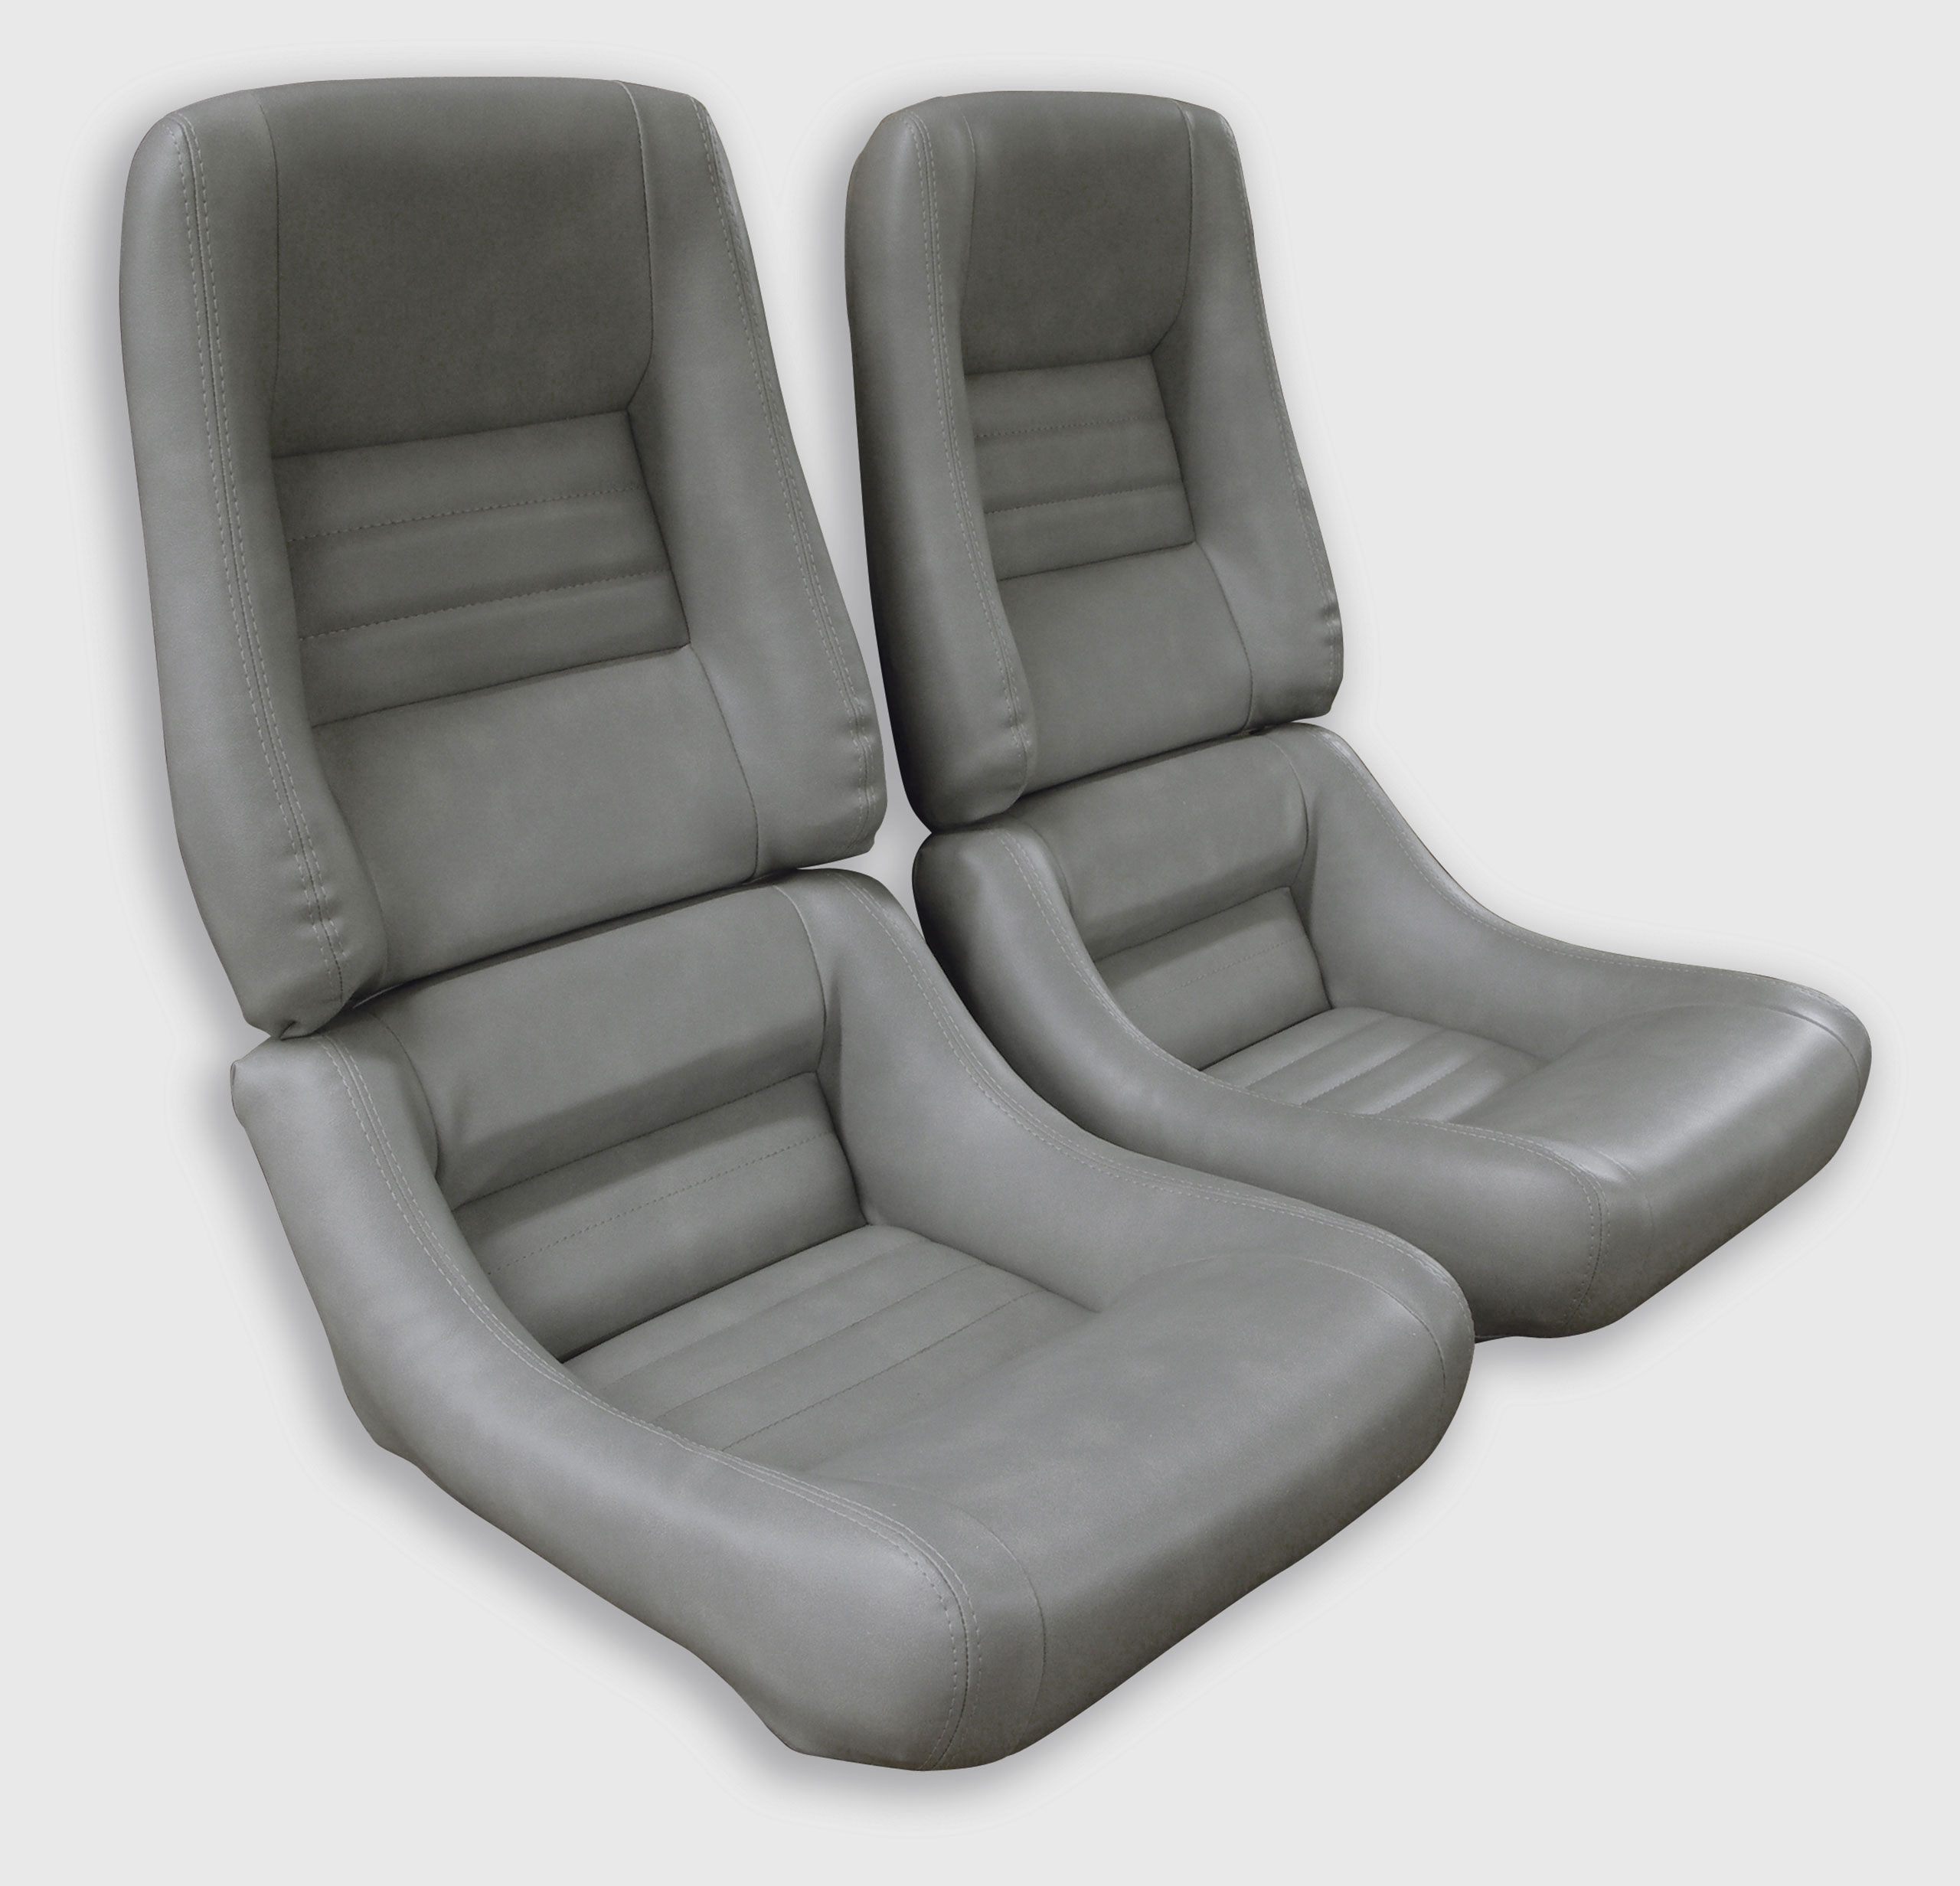 1982 Corvette C3 "Leather-Like" Vinyl Seat Covers Gray 4" Bolster CA-421768 